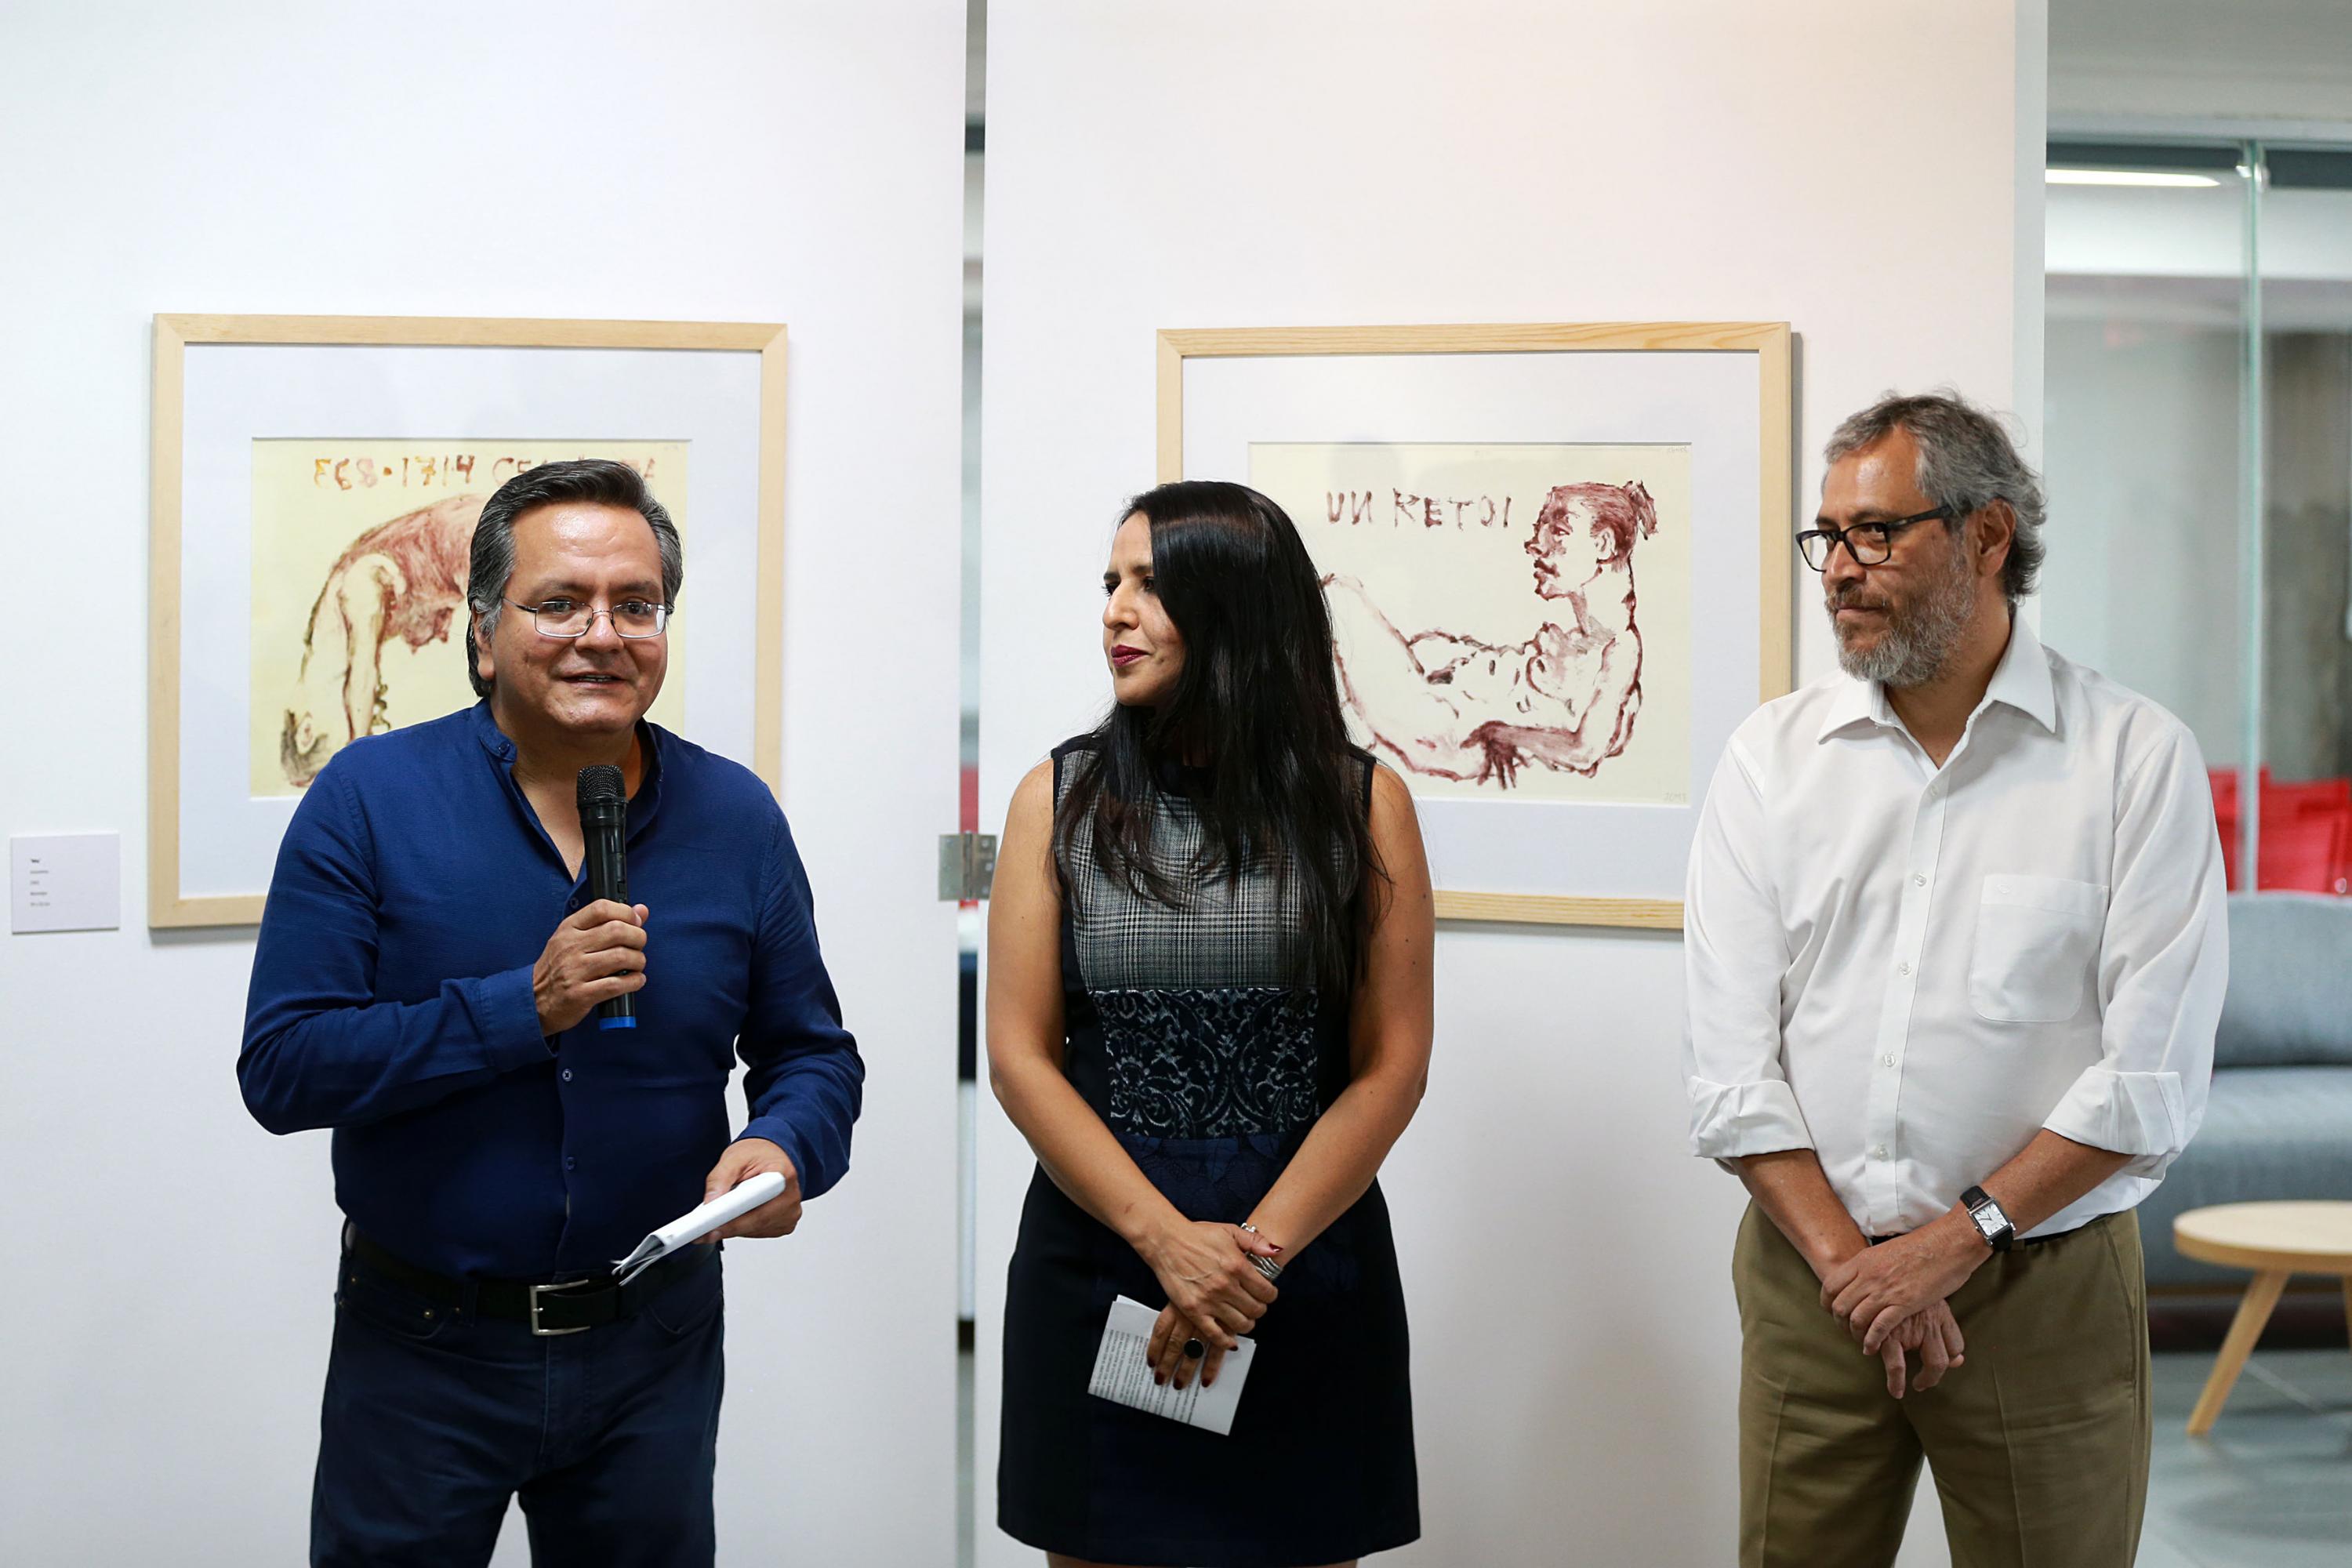 Inauguran exposición “Modelo femenino” en la Biblioteca Pública de Jalisco  | Universidad de Guadalajara